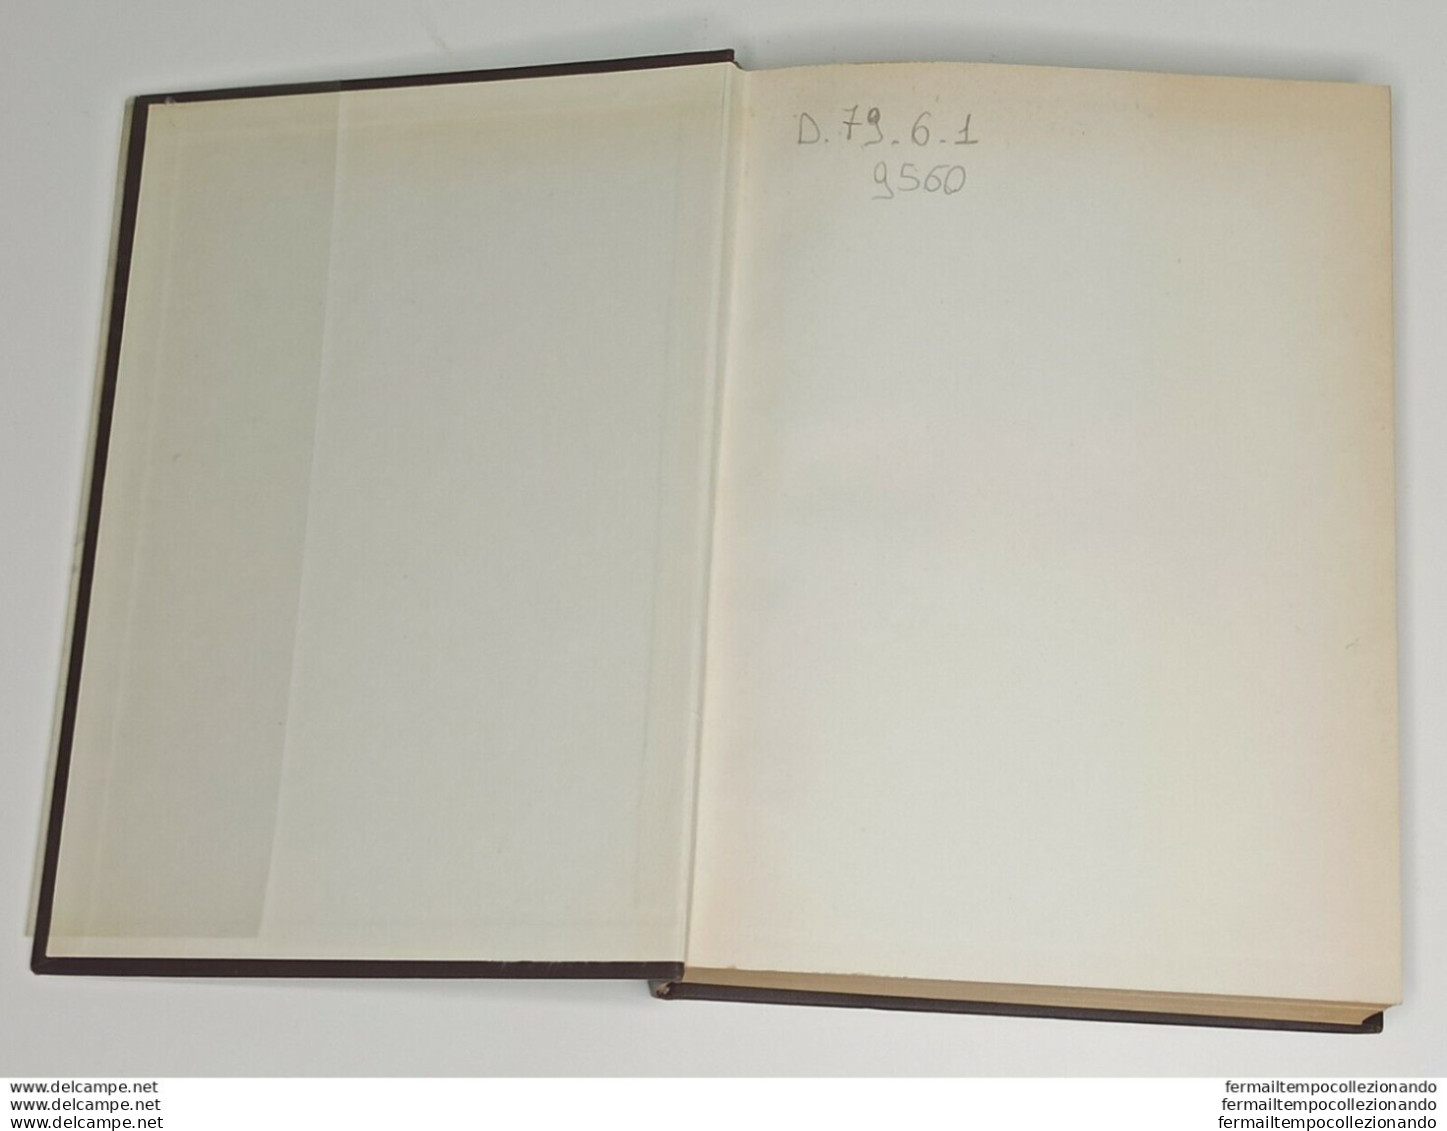 Bf Libro Marco Aurelio Di Ernesto Renan Dall'oglio 1955 - Other & Unclassified